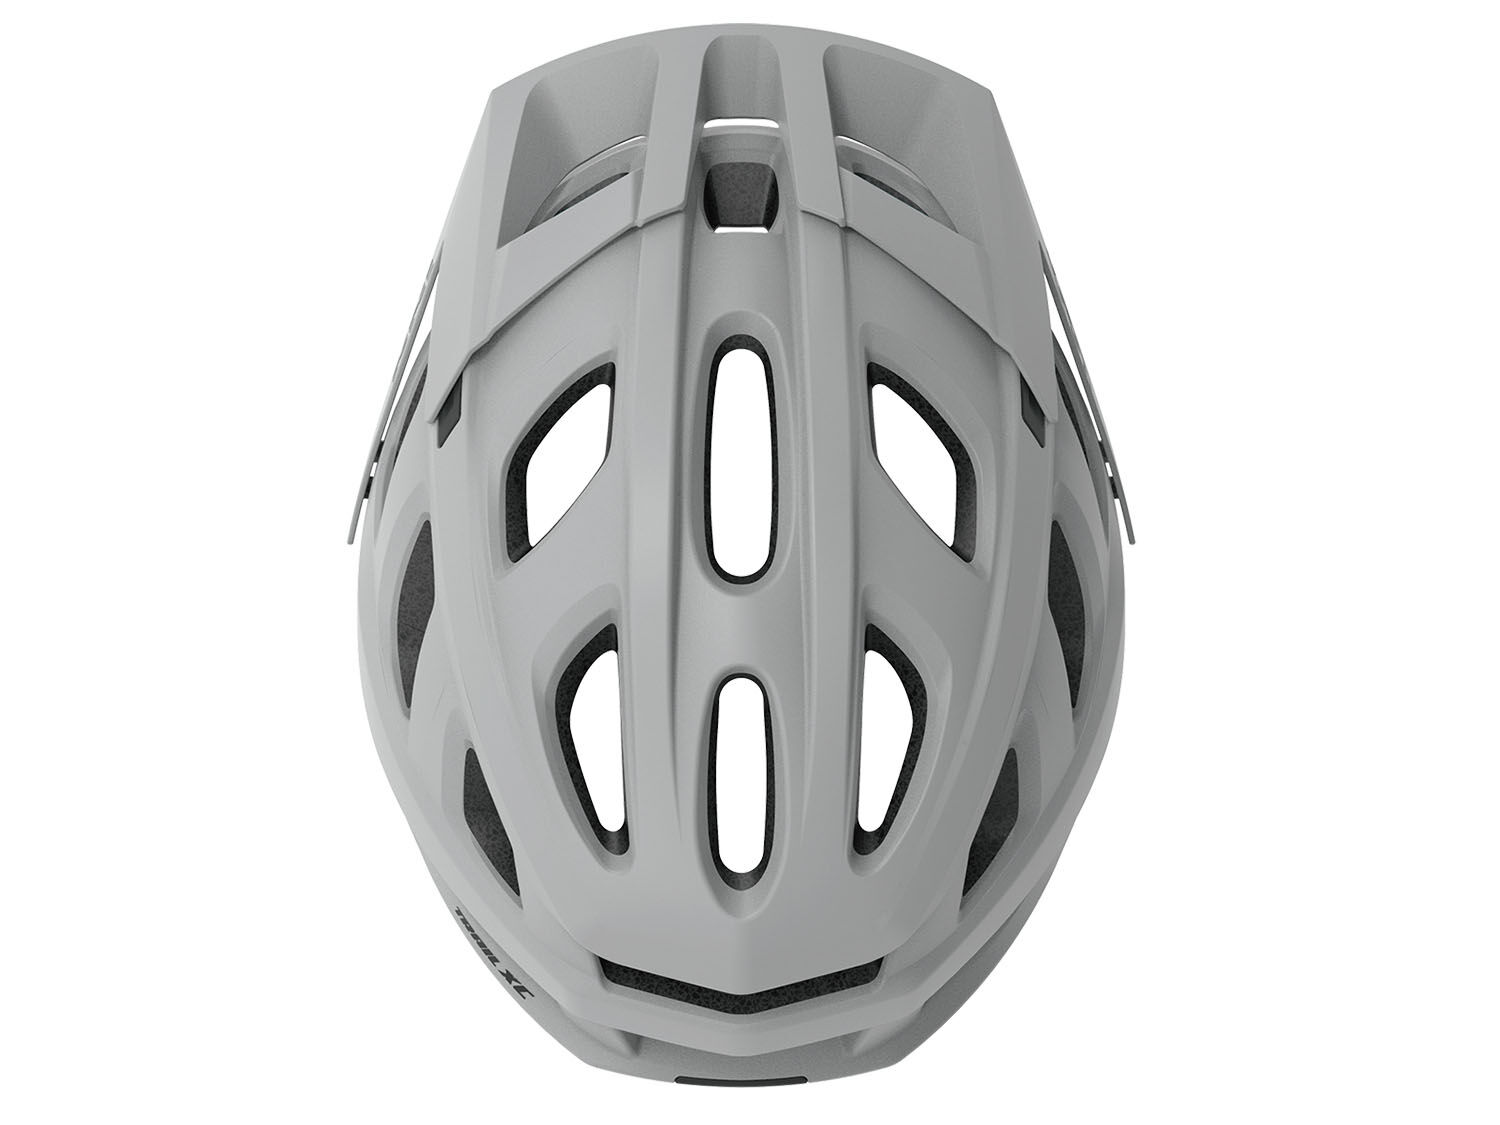 iXS Trail XC Evo Helmet, grey, XS/S